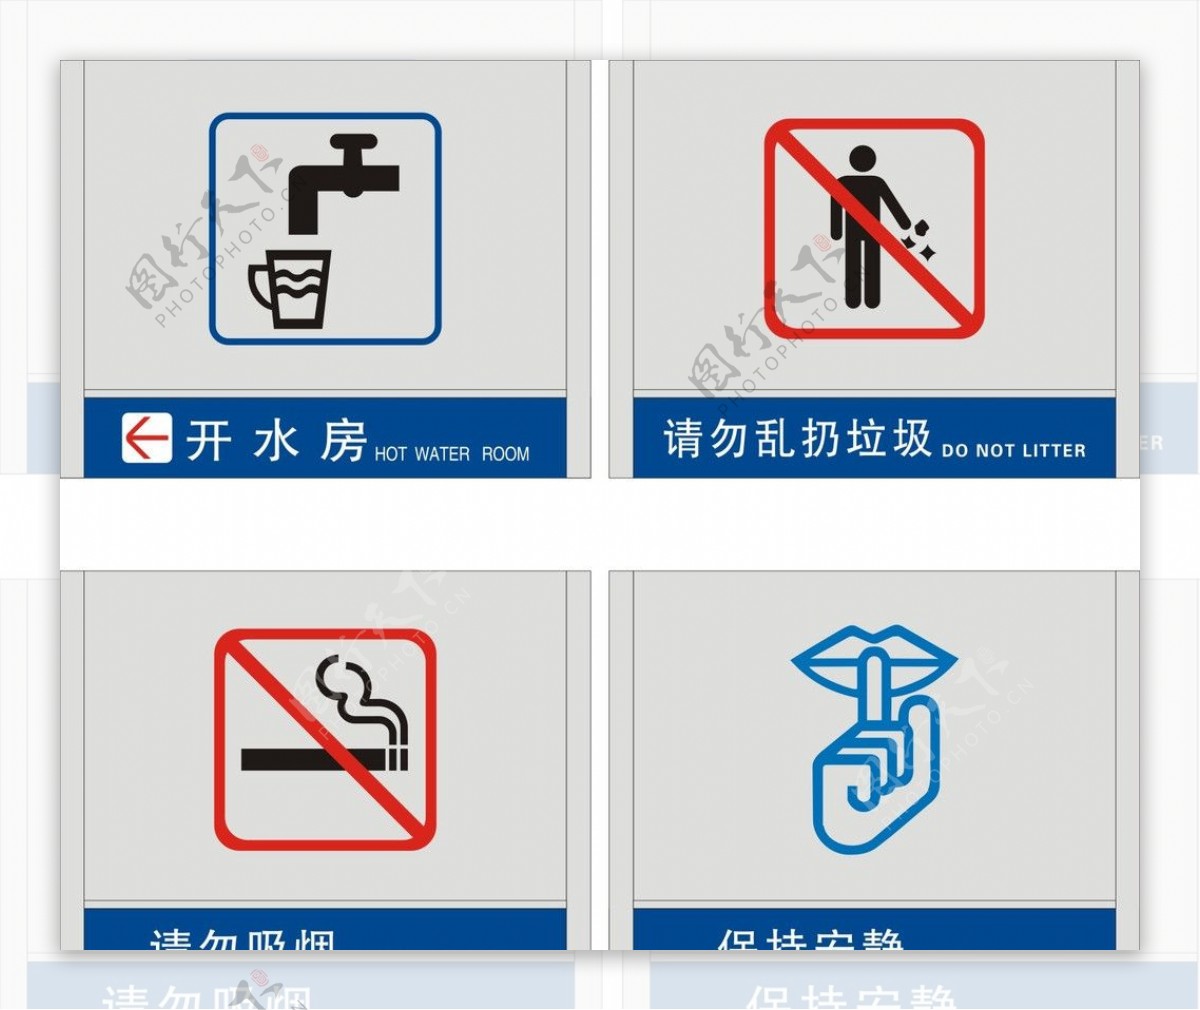 开水房保持安静请勿吸烟请勿乱扔垃圾公共标识图片